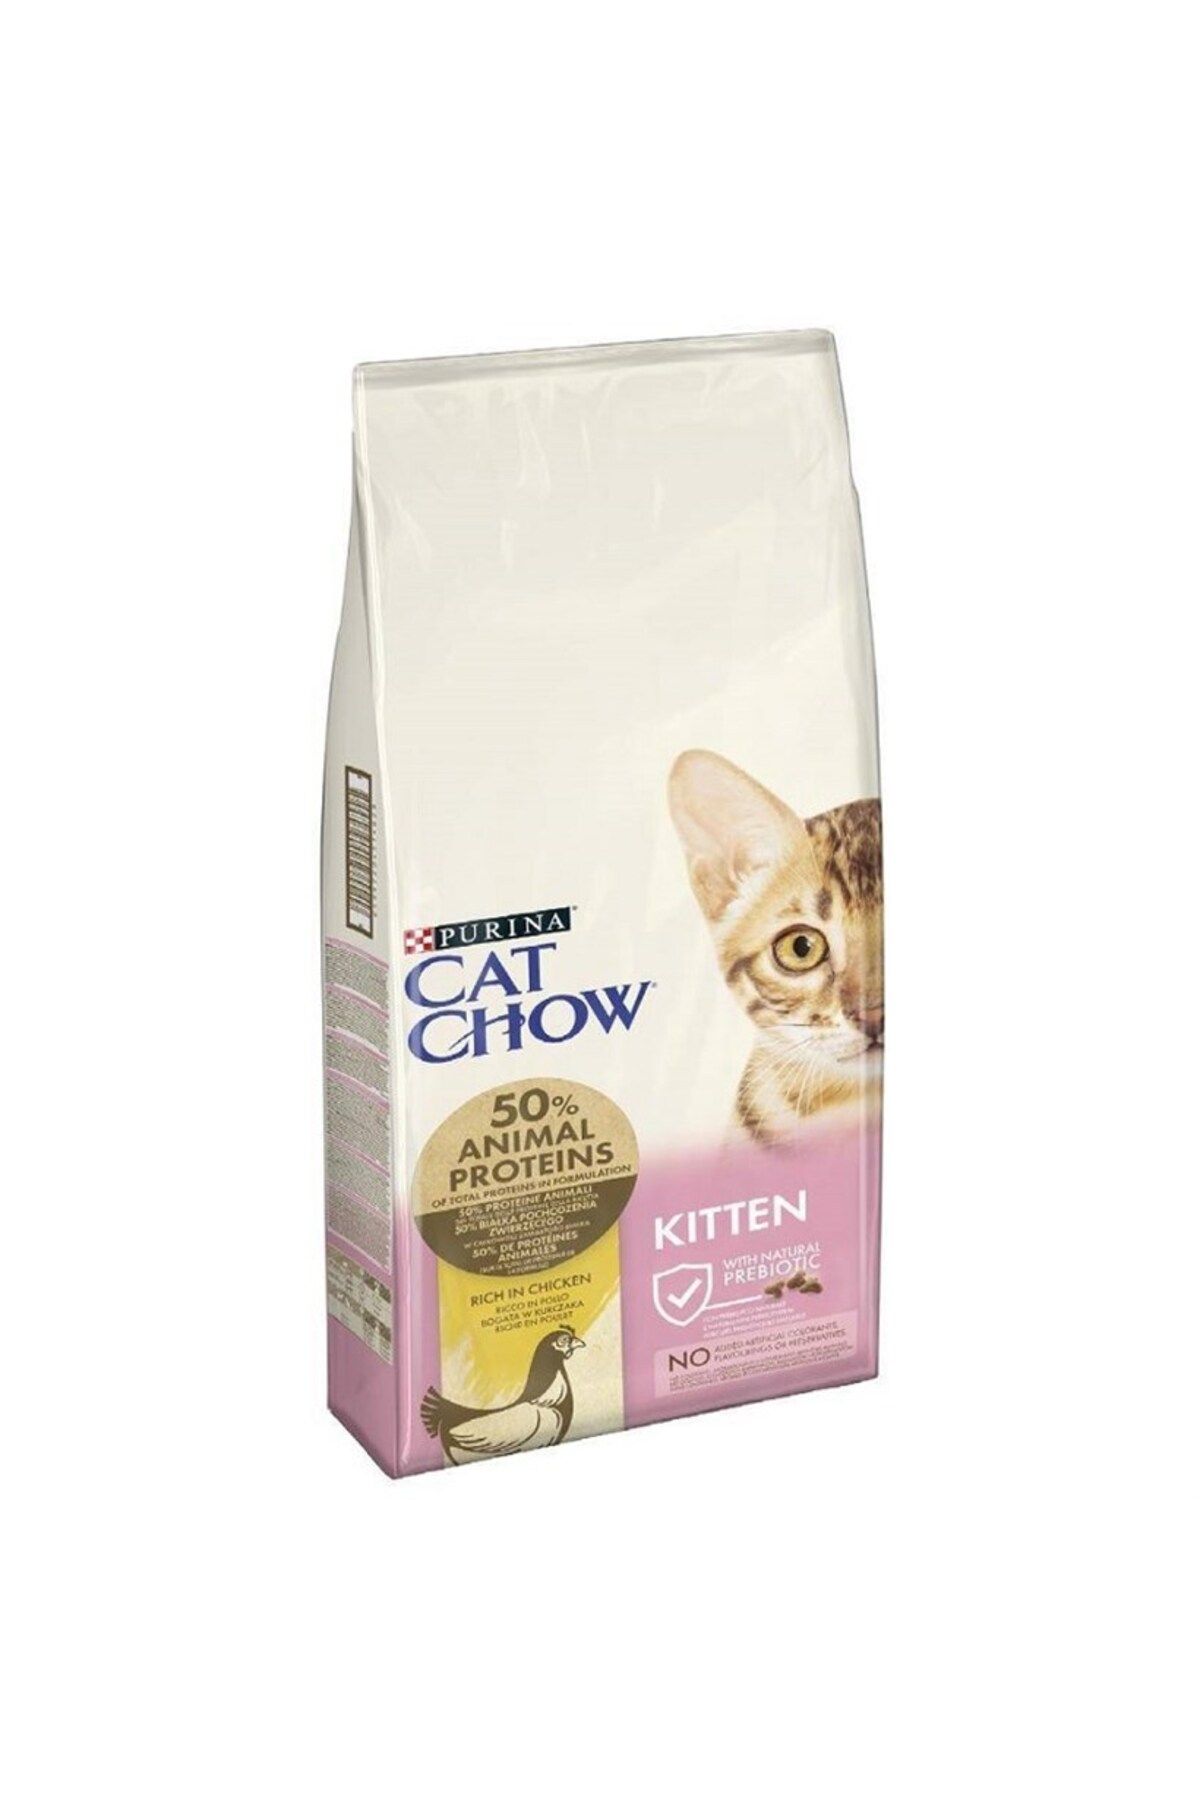 Cat Chow Tavuklu Yavru Kedi Kuru Maması 15 Kg (YENİ AMBALAJ)